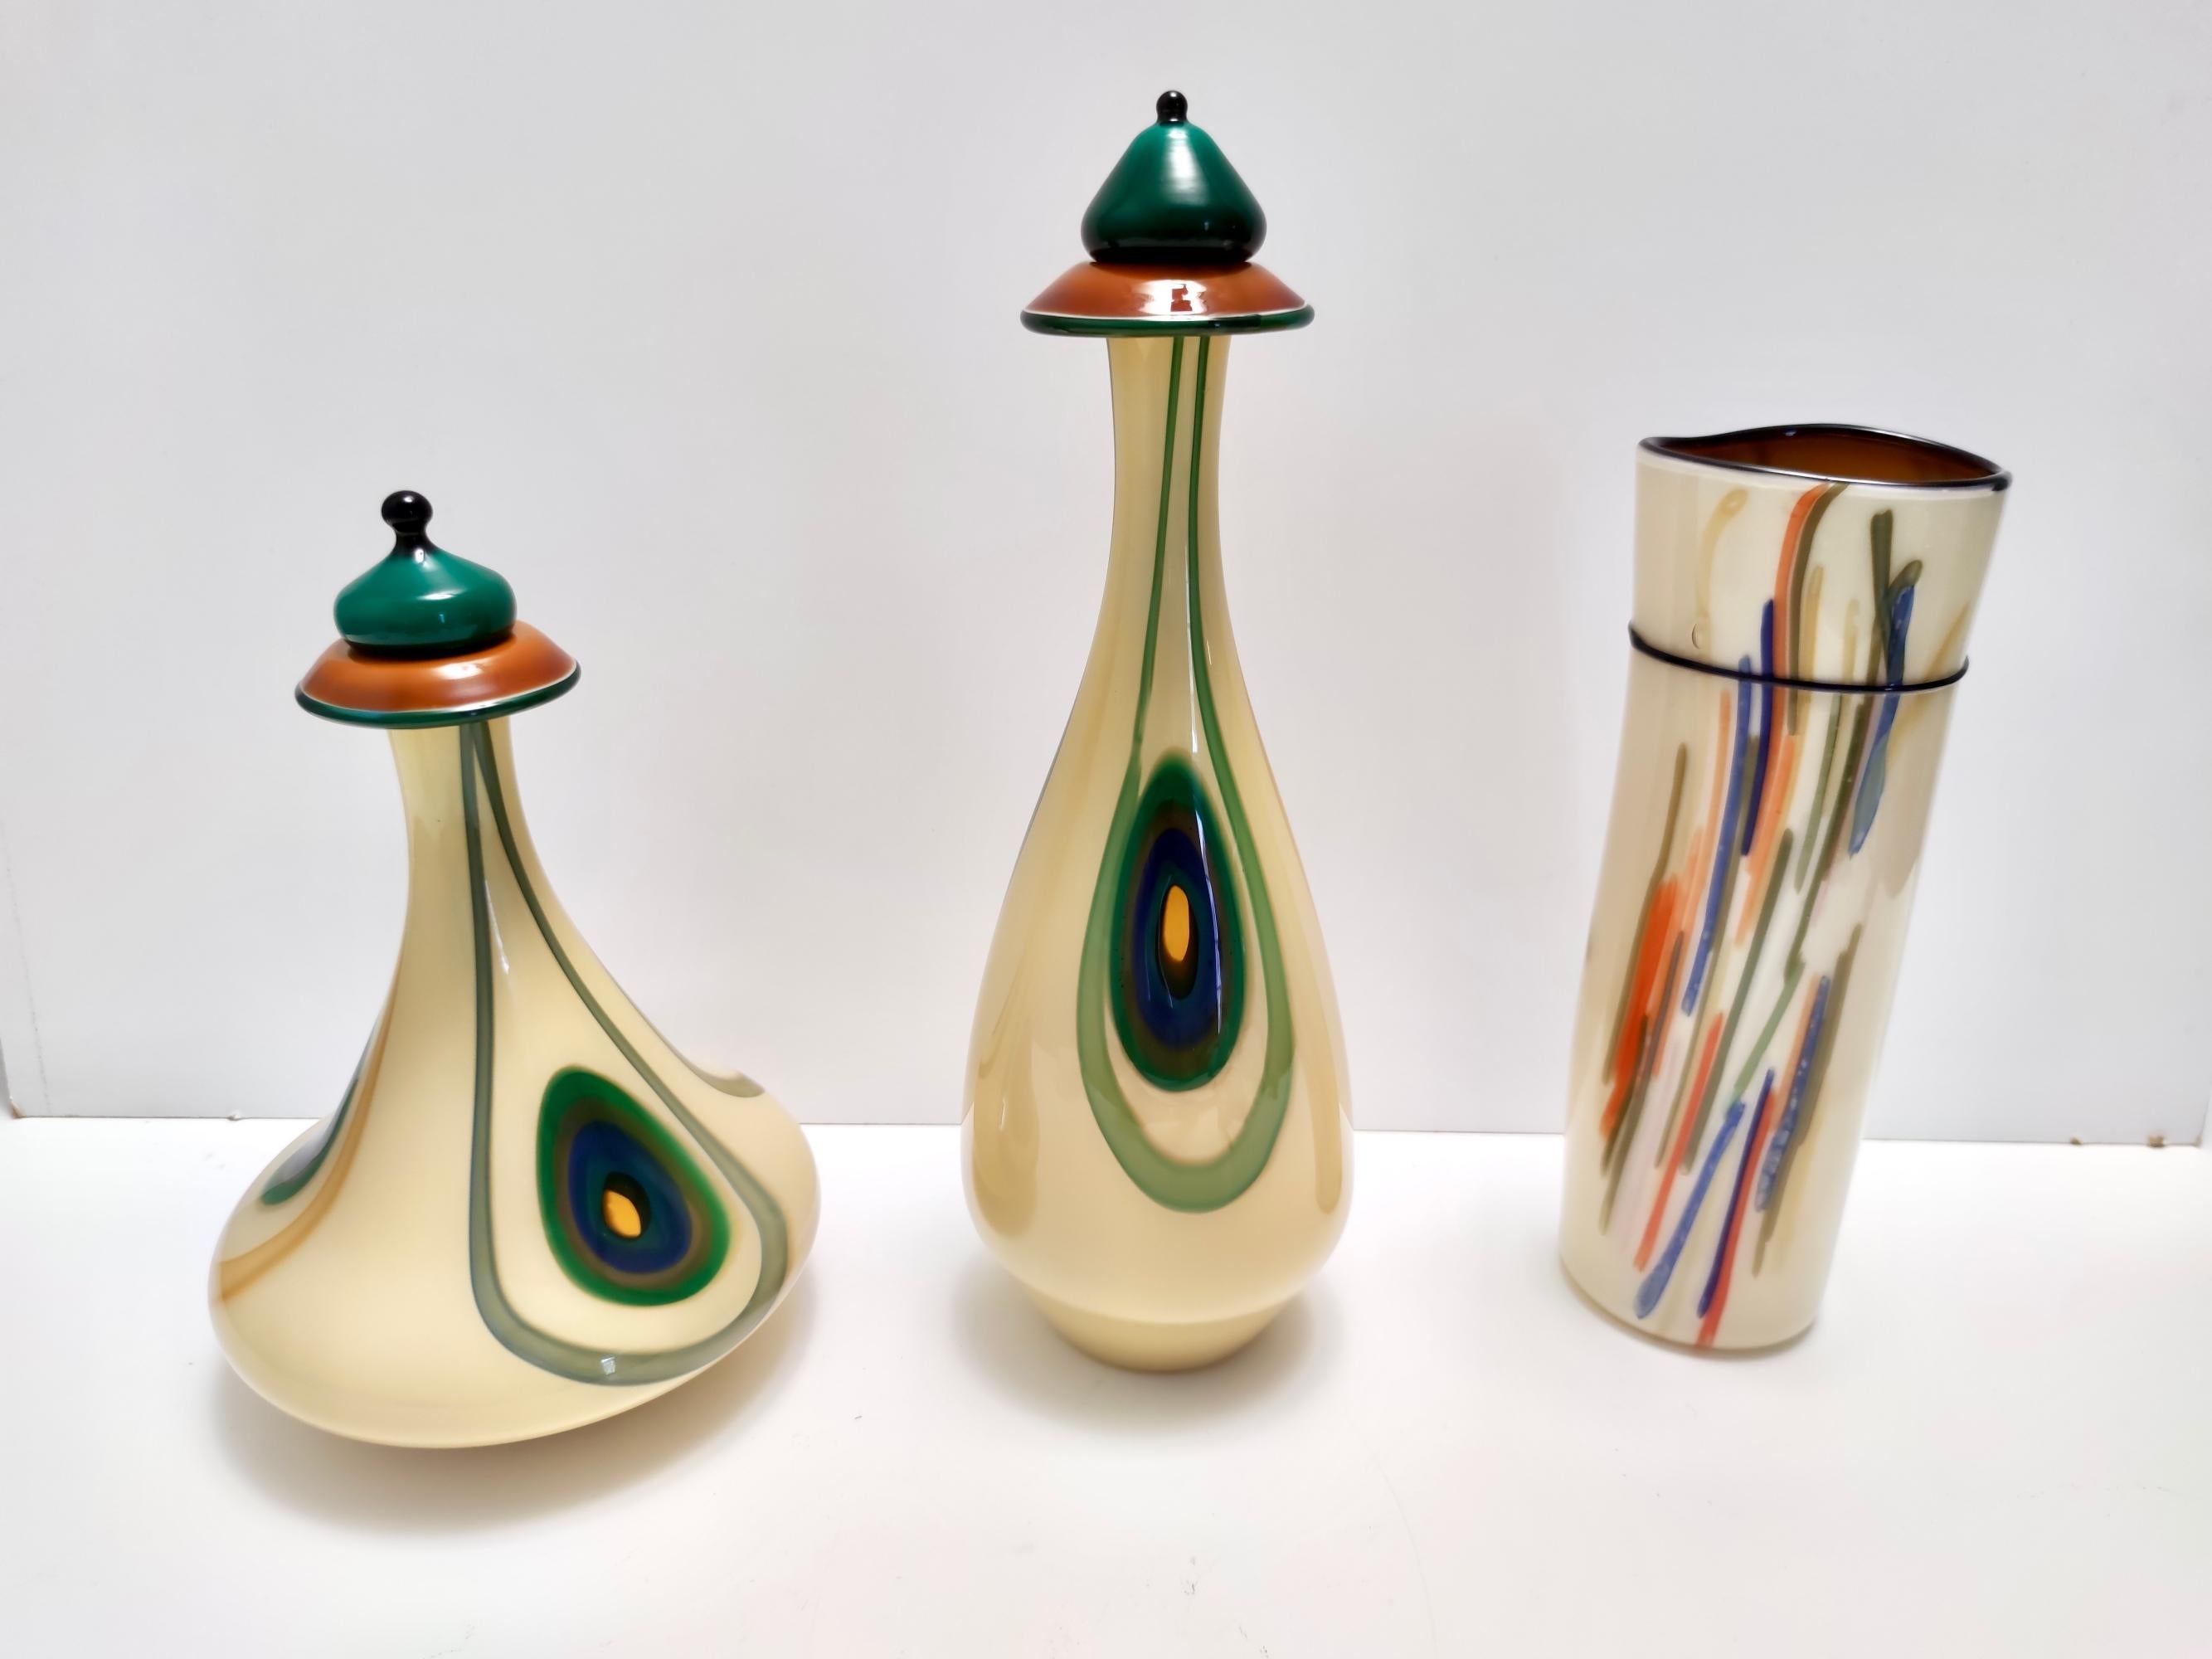 Hergestellt in Italien, 1960er - 1970er Jahre.
Diese Dekanterflasche ist Teil eines dreiteiligen Sets. 
Es ist aus dreifarbigem Glas mit grünen Rändern und Murrinen gefertigt.  
Da es sich um einen Vintage-Artikel handelt, kann er leichte